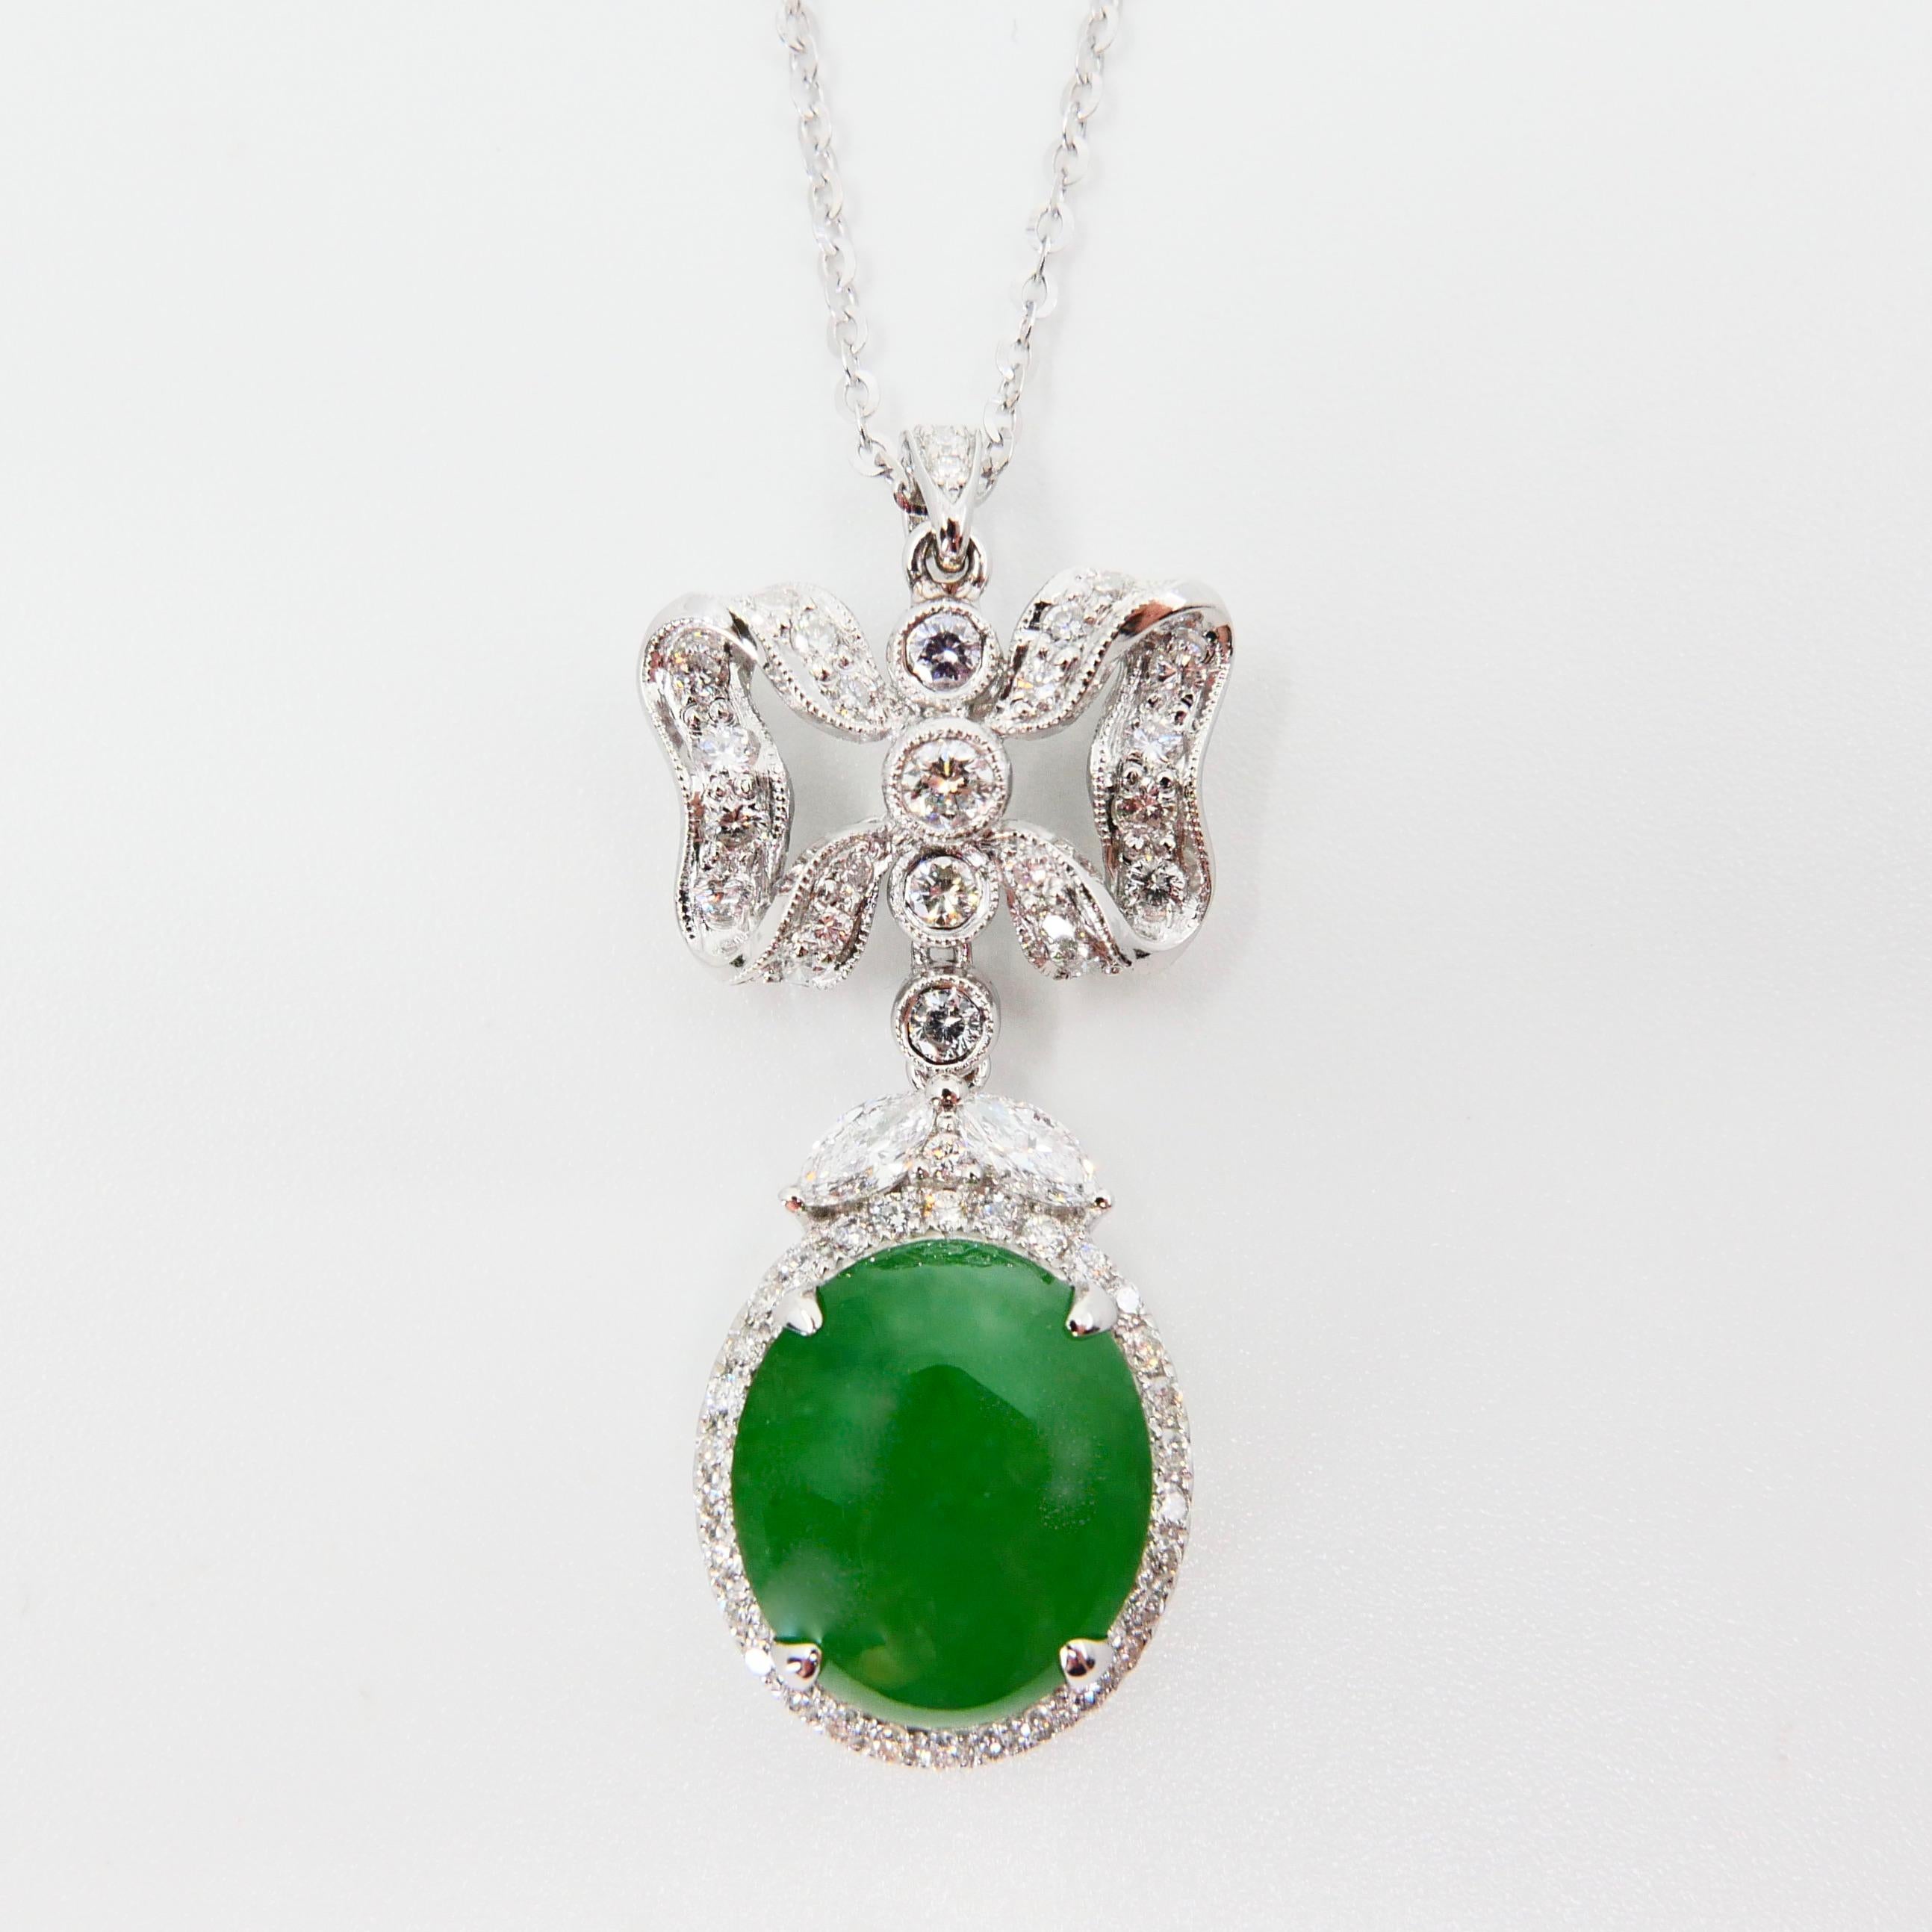 Oval Cut Natural Type A Jadeite Jade Diamond Pendant Drop Necklace, Deep Green Color For Sale